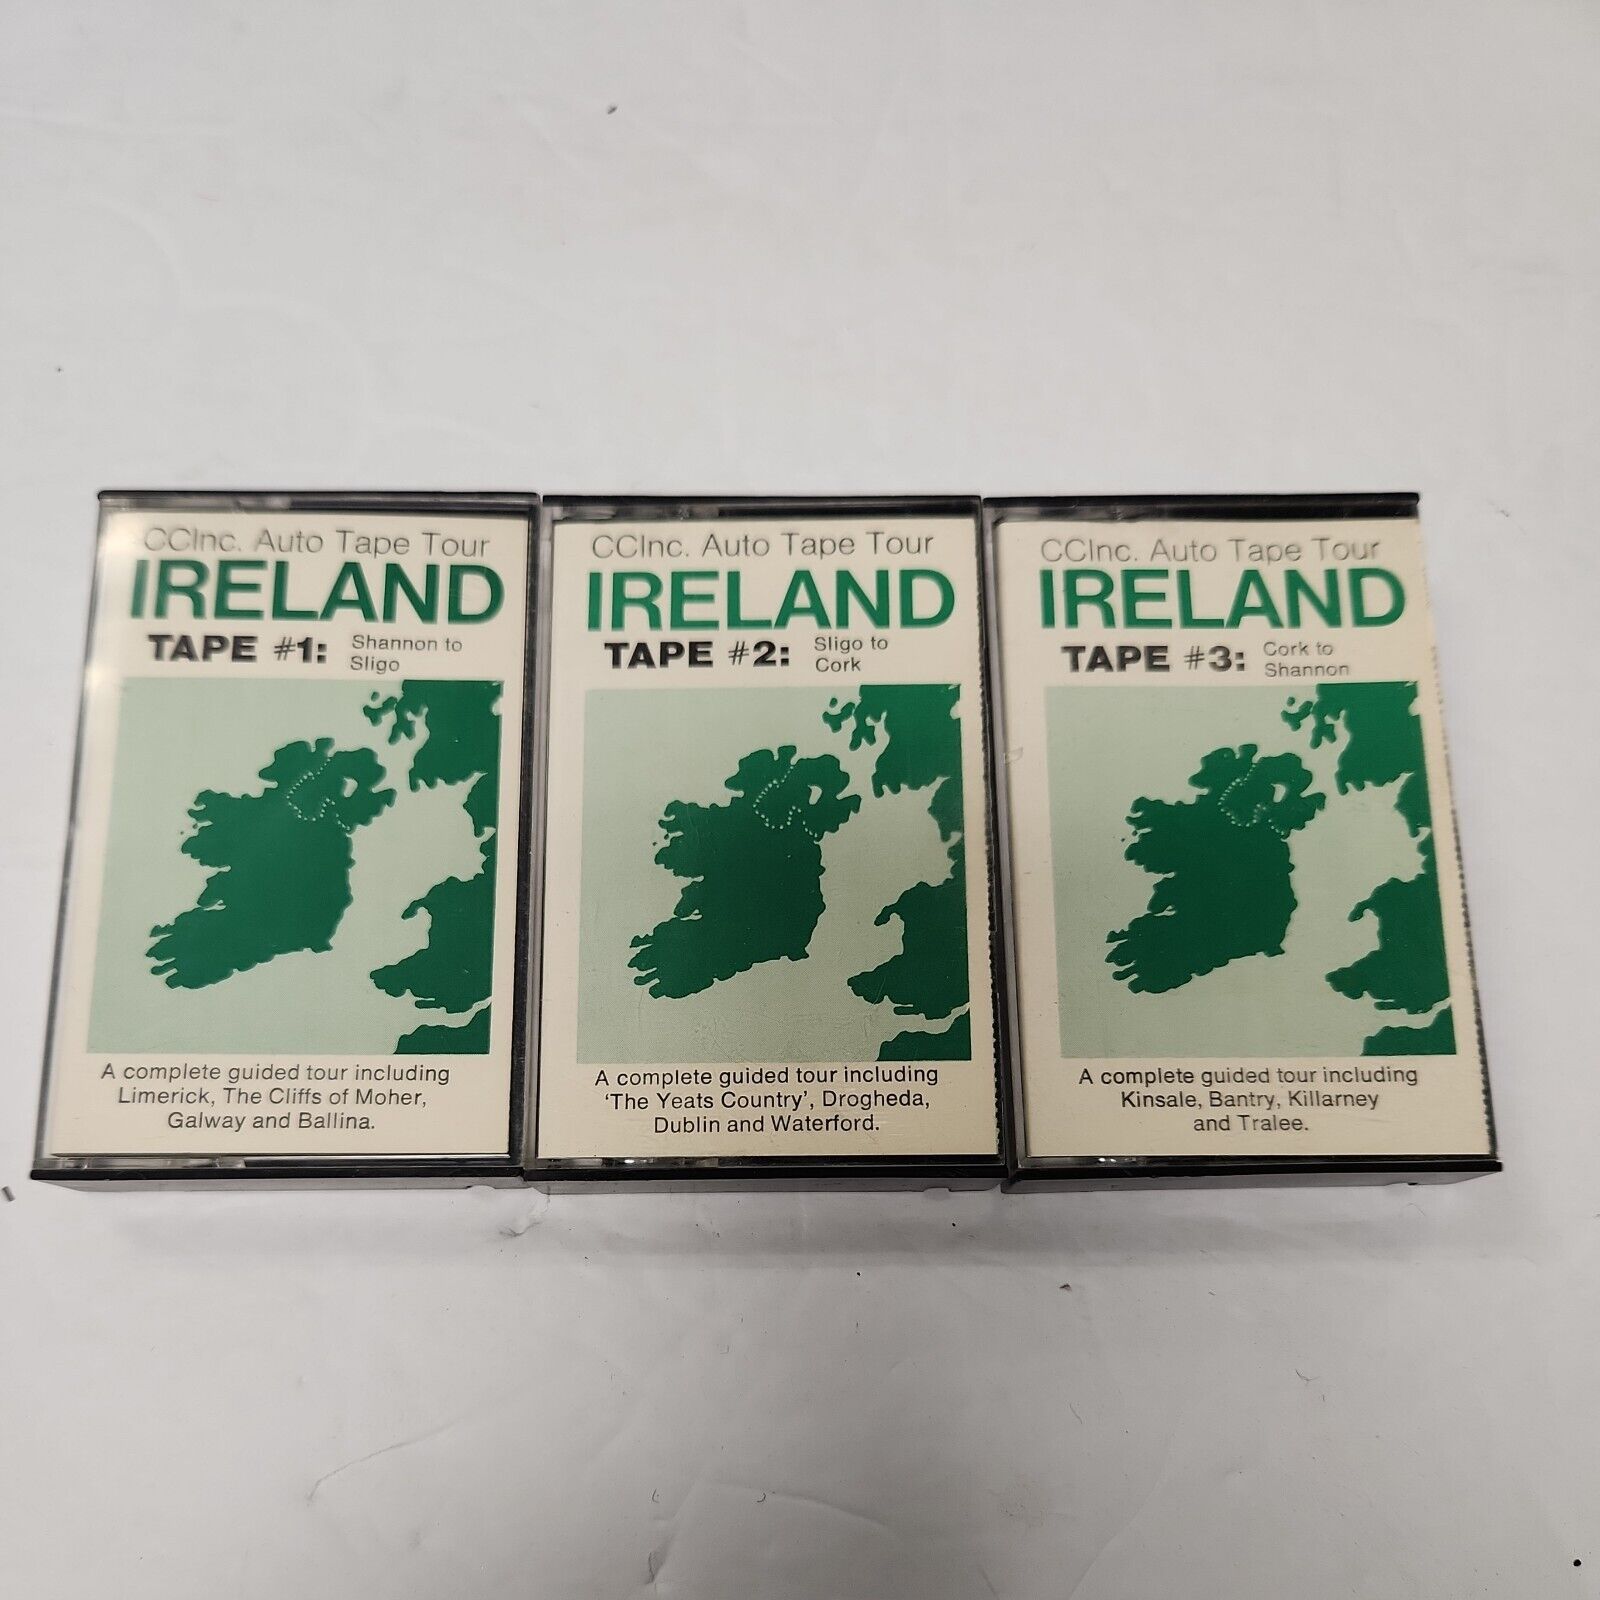  Audio Tape Tour Vintage Ireland Cassette- 3 Tapes total CCI